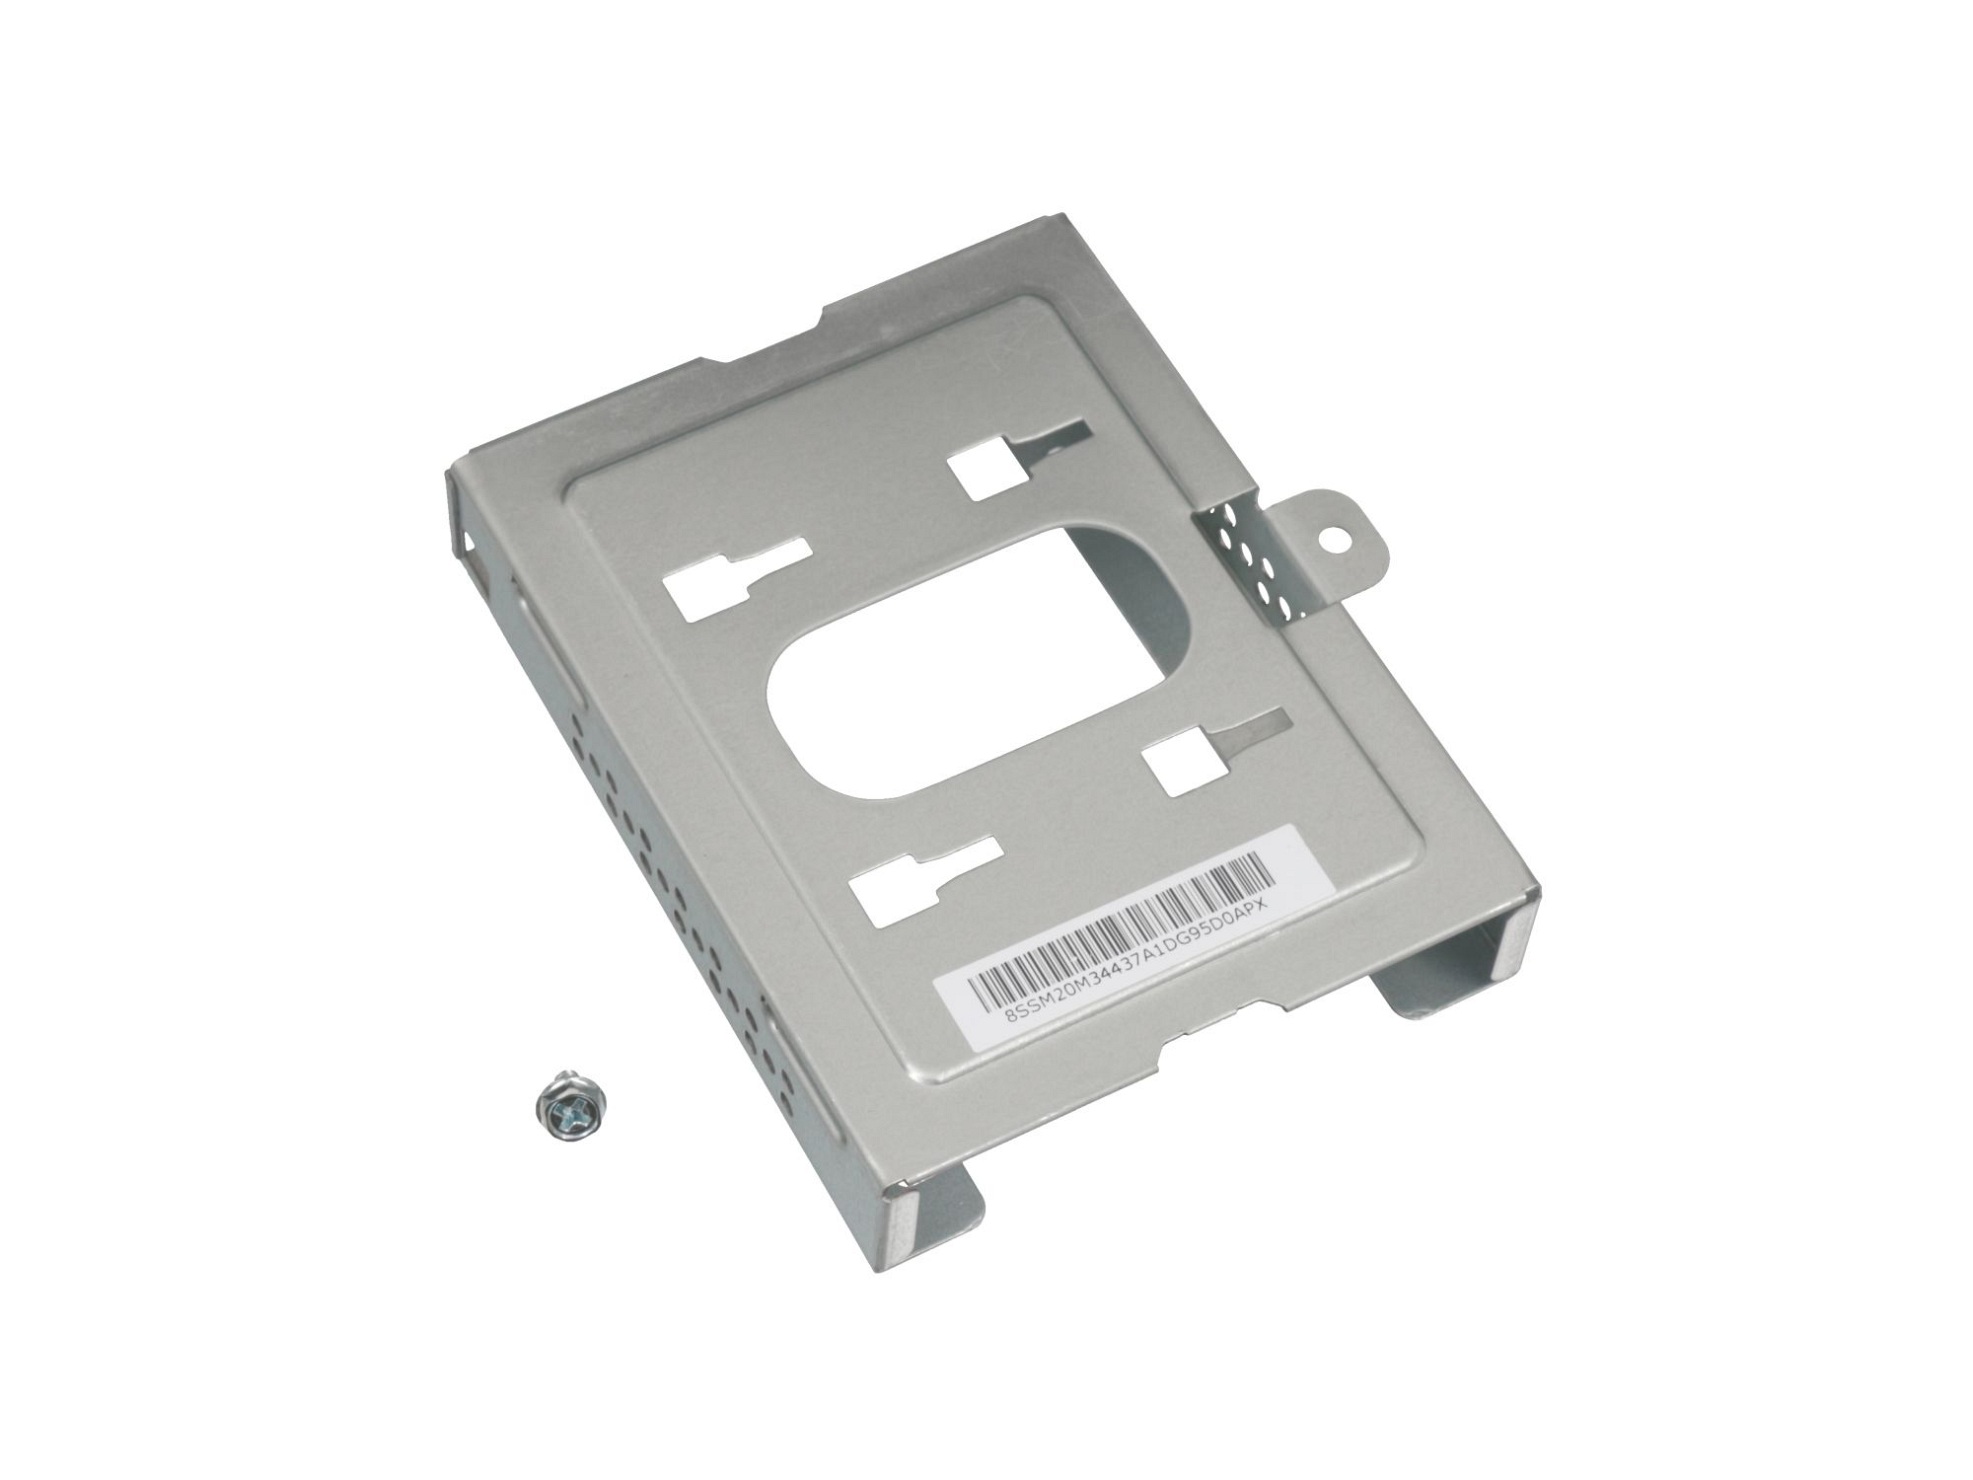 Festplatten-Einbaurahmen für den 1. Festplatten Schacht Original für Lenovo ThinkCentre M715t (10MD/10ME)